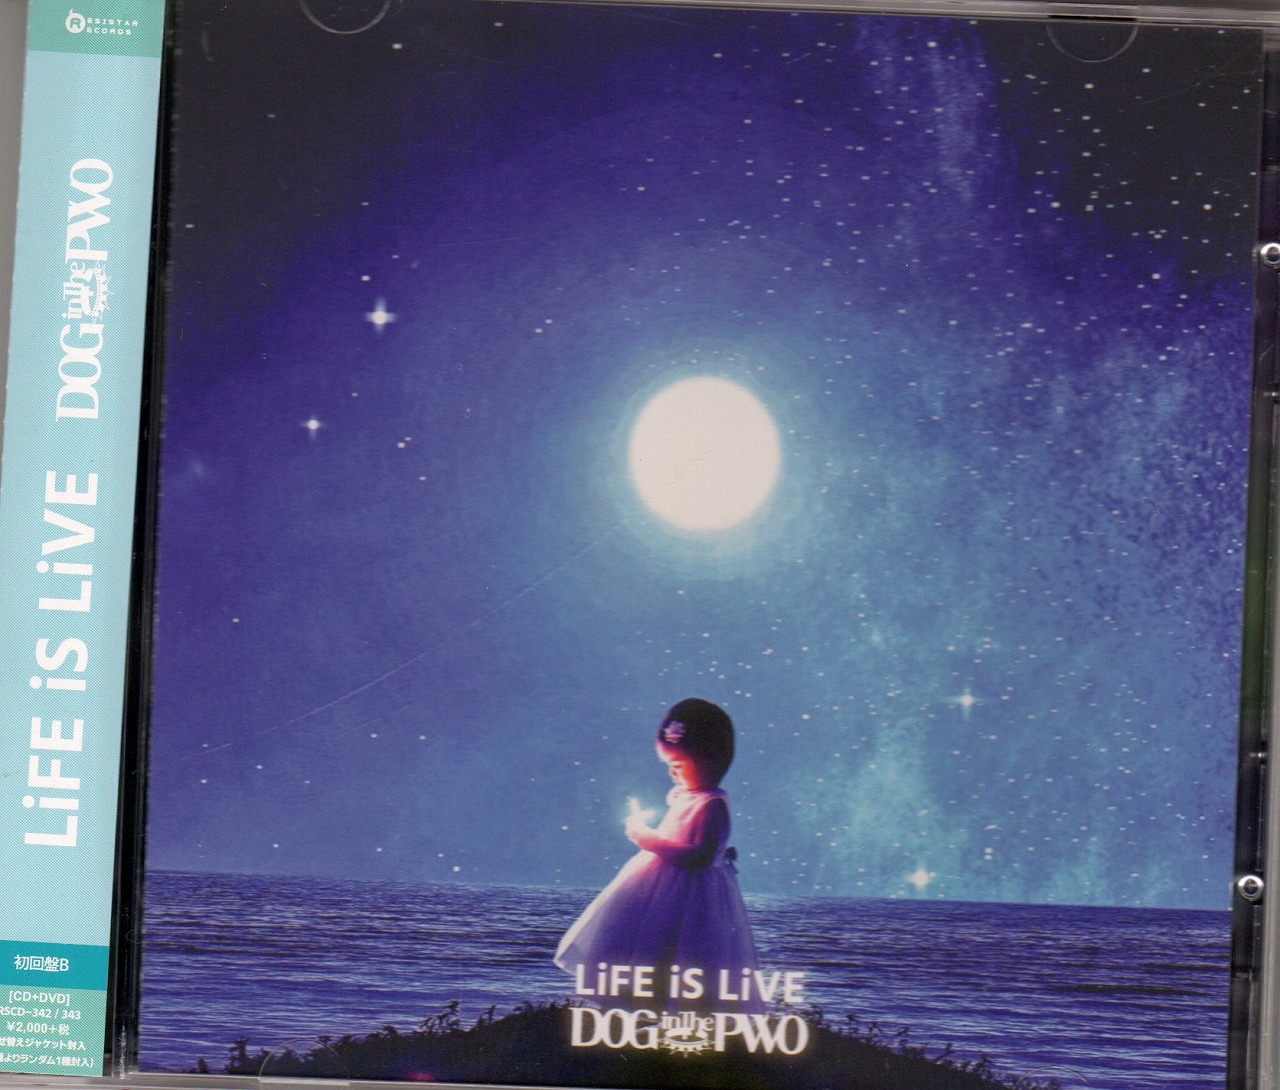 ドッグインザパラレルワールドオーケストラ の CD 【初回盤B】LiFE iS LiVE